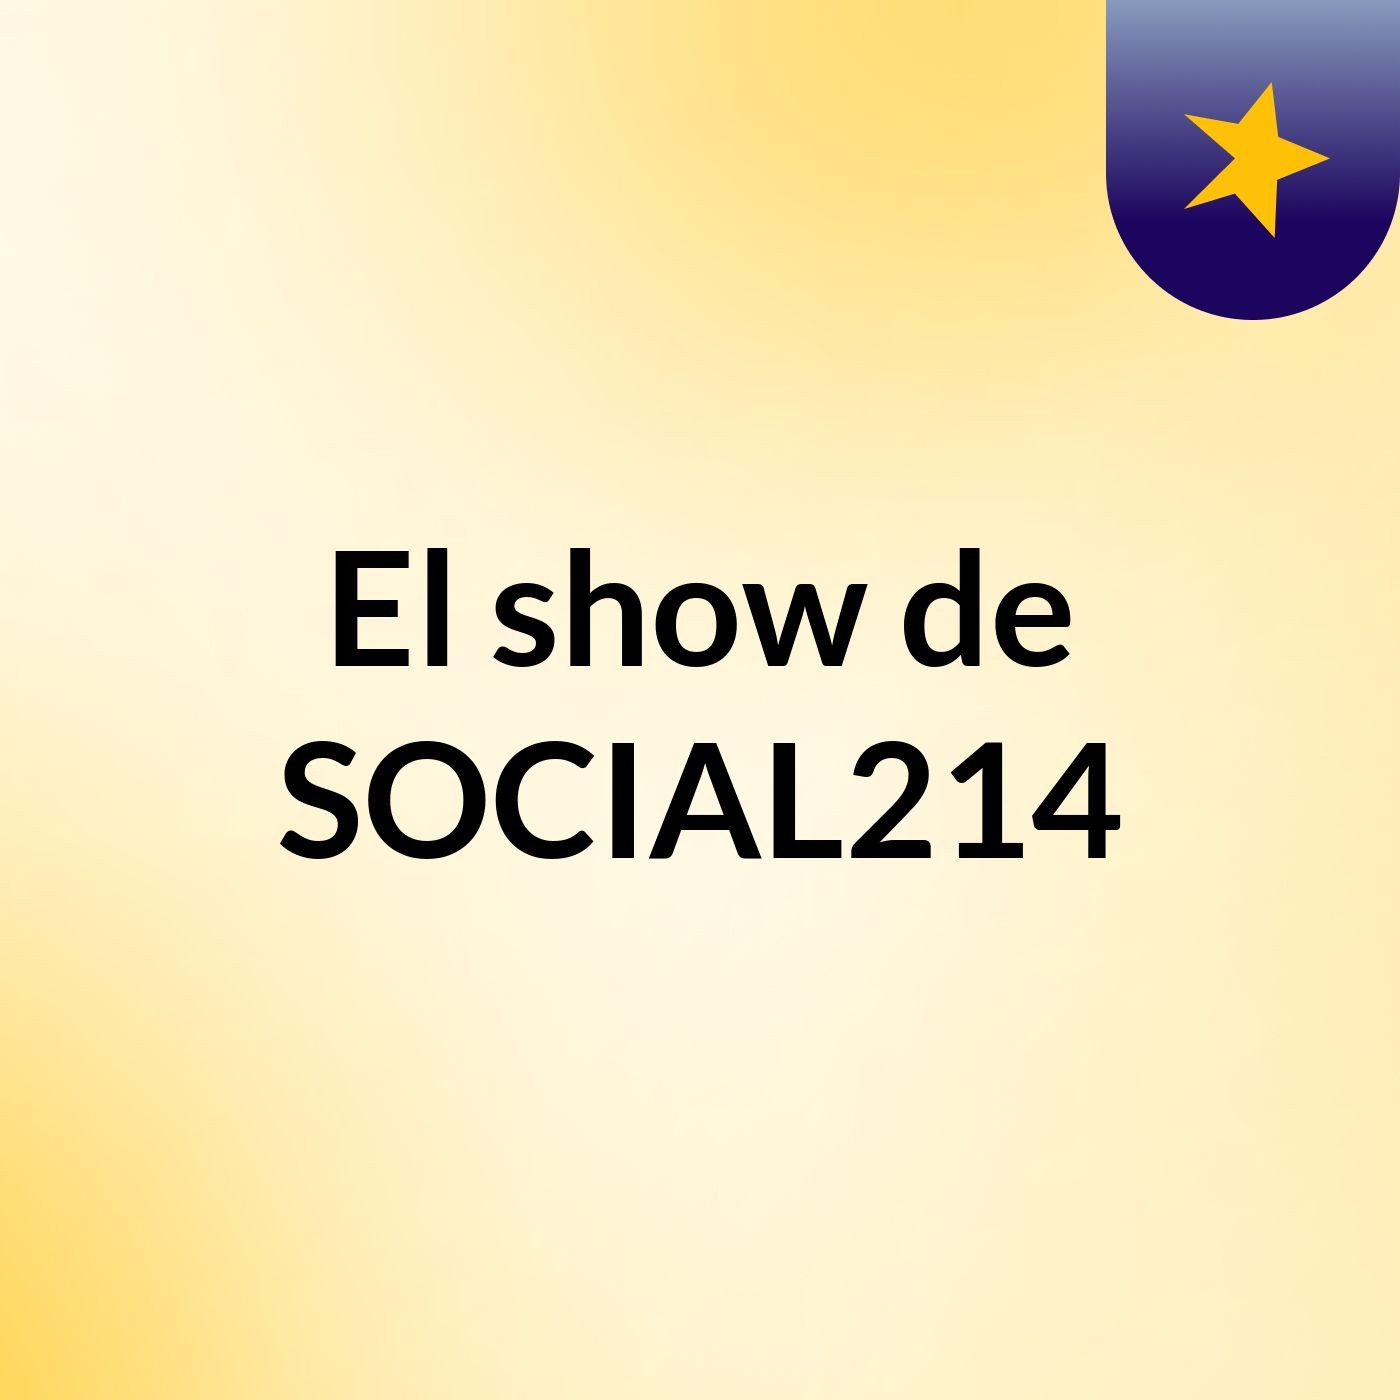 Episodio 5 - El show de SOCIAL214